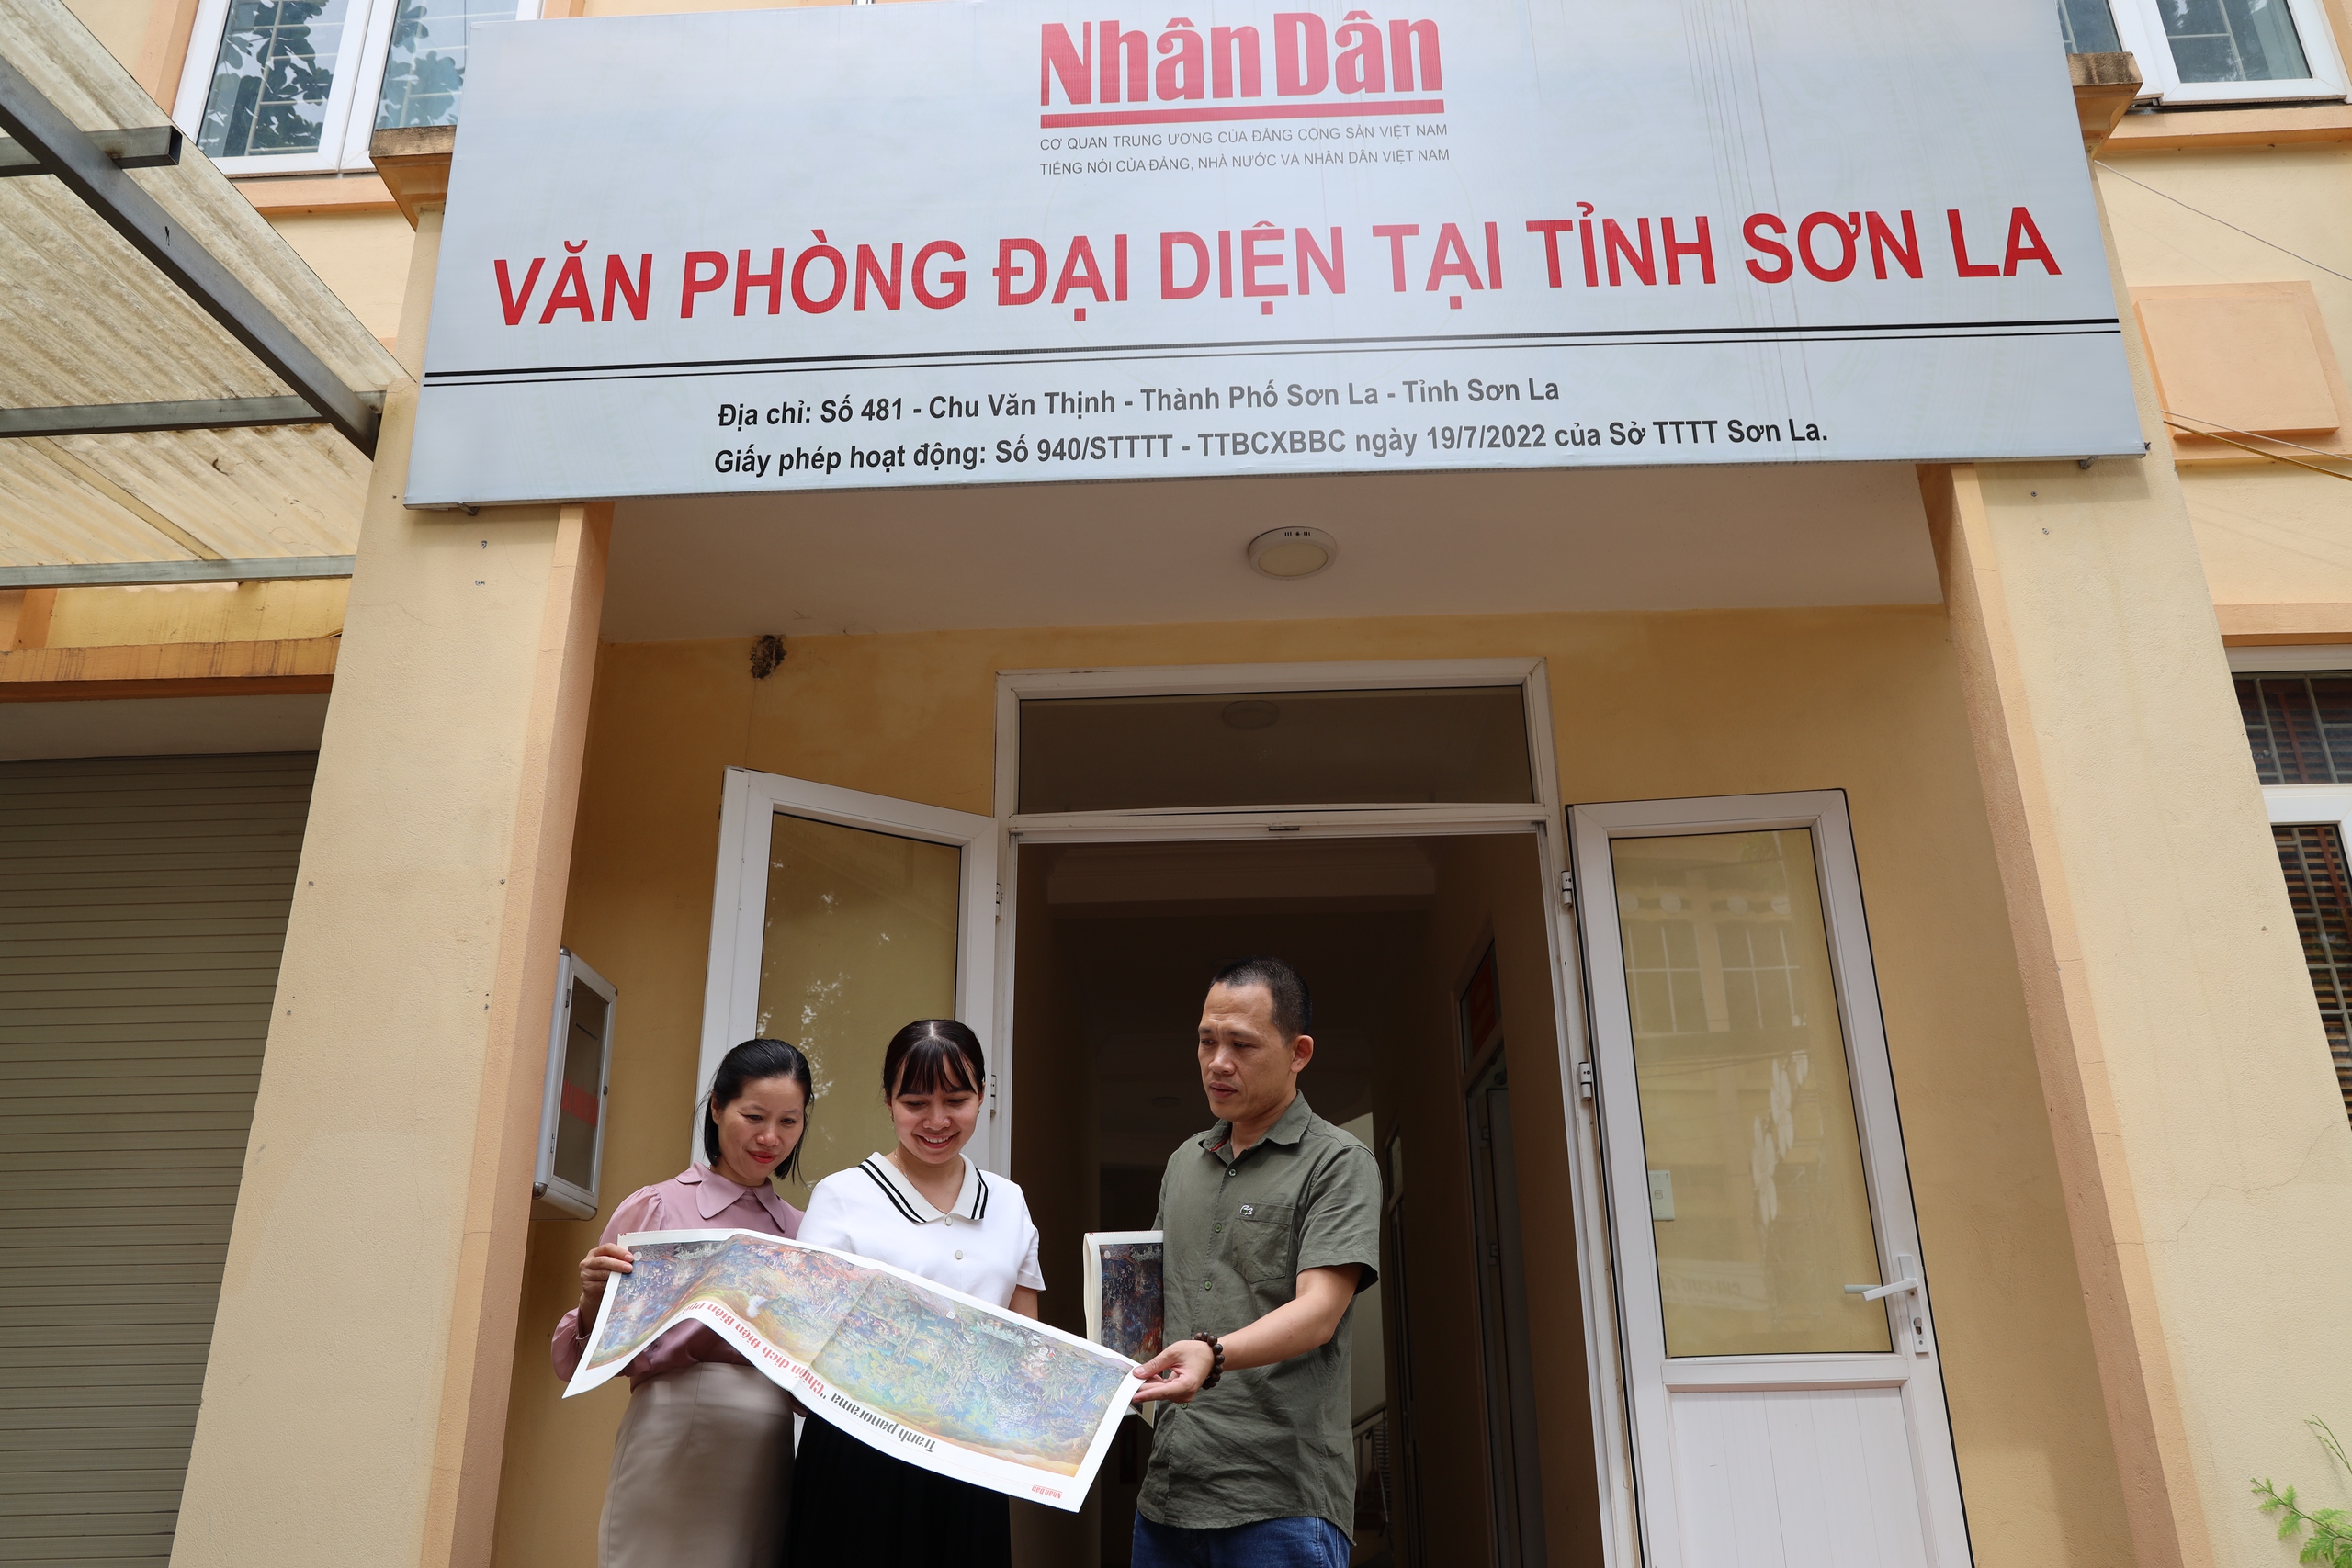 Văn phòng đại diện Báo Nhân Dân tại Sơn La: Tặng bạn đọc 1.000 bản phụ san tranh panorama "Chiến dịch Điện Biên Phủ"- Ảnh 4.